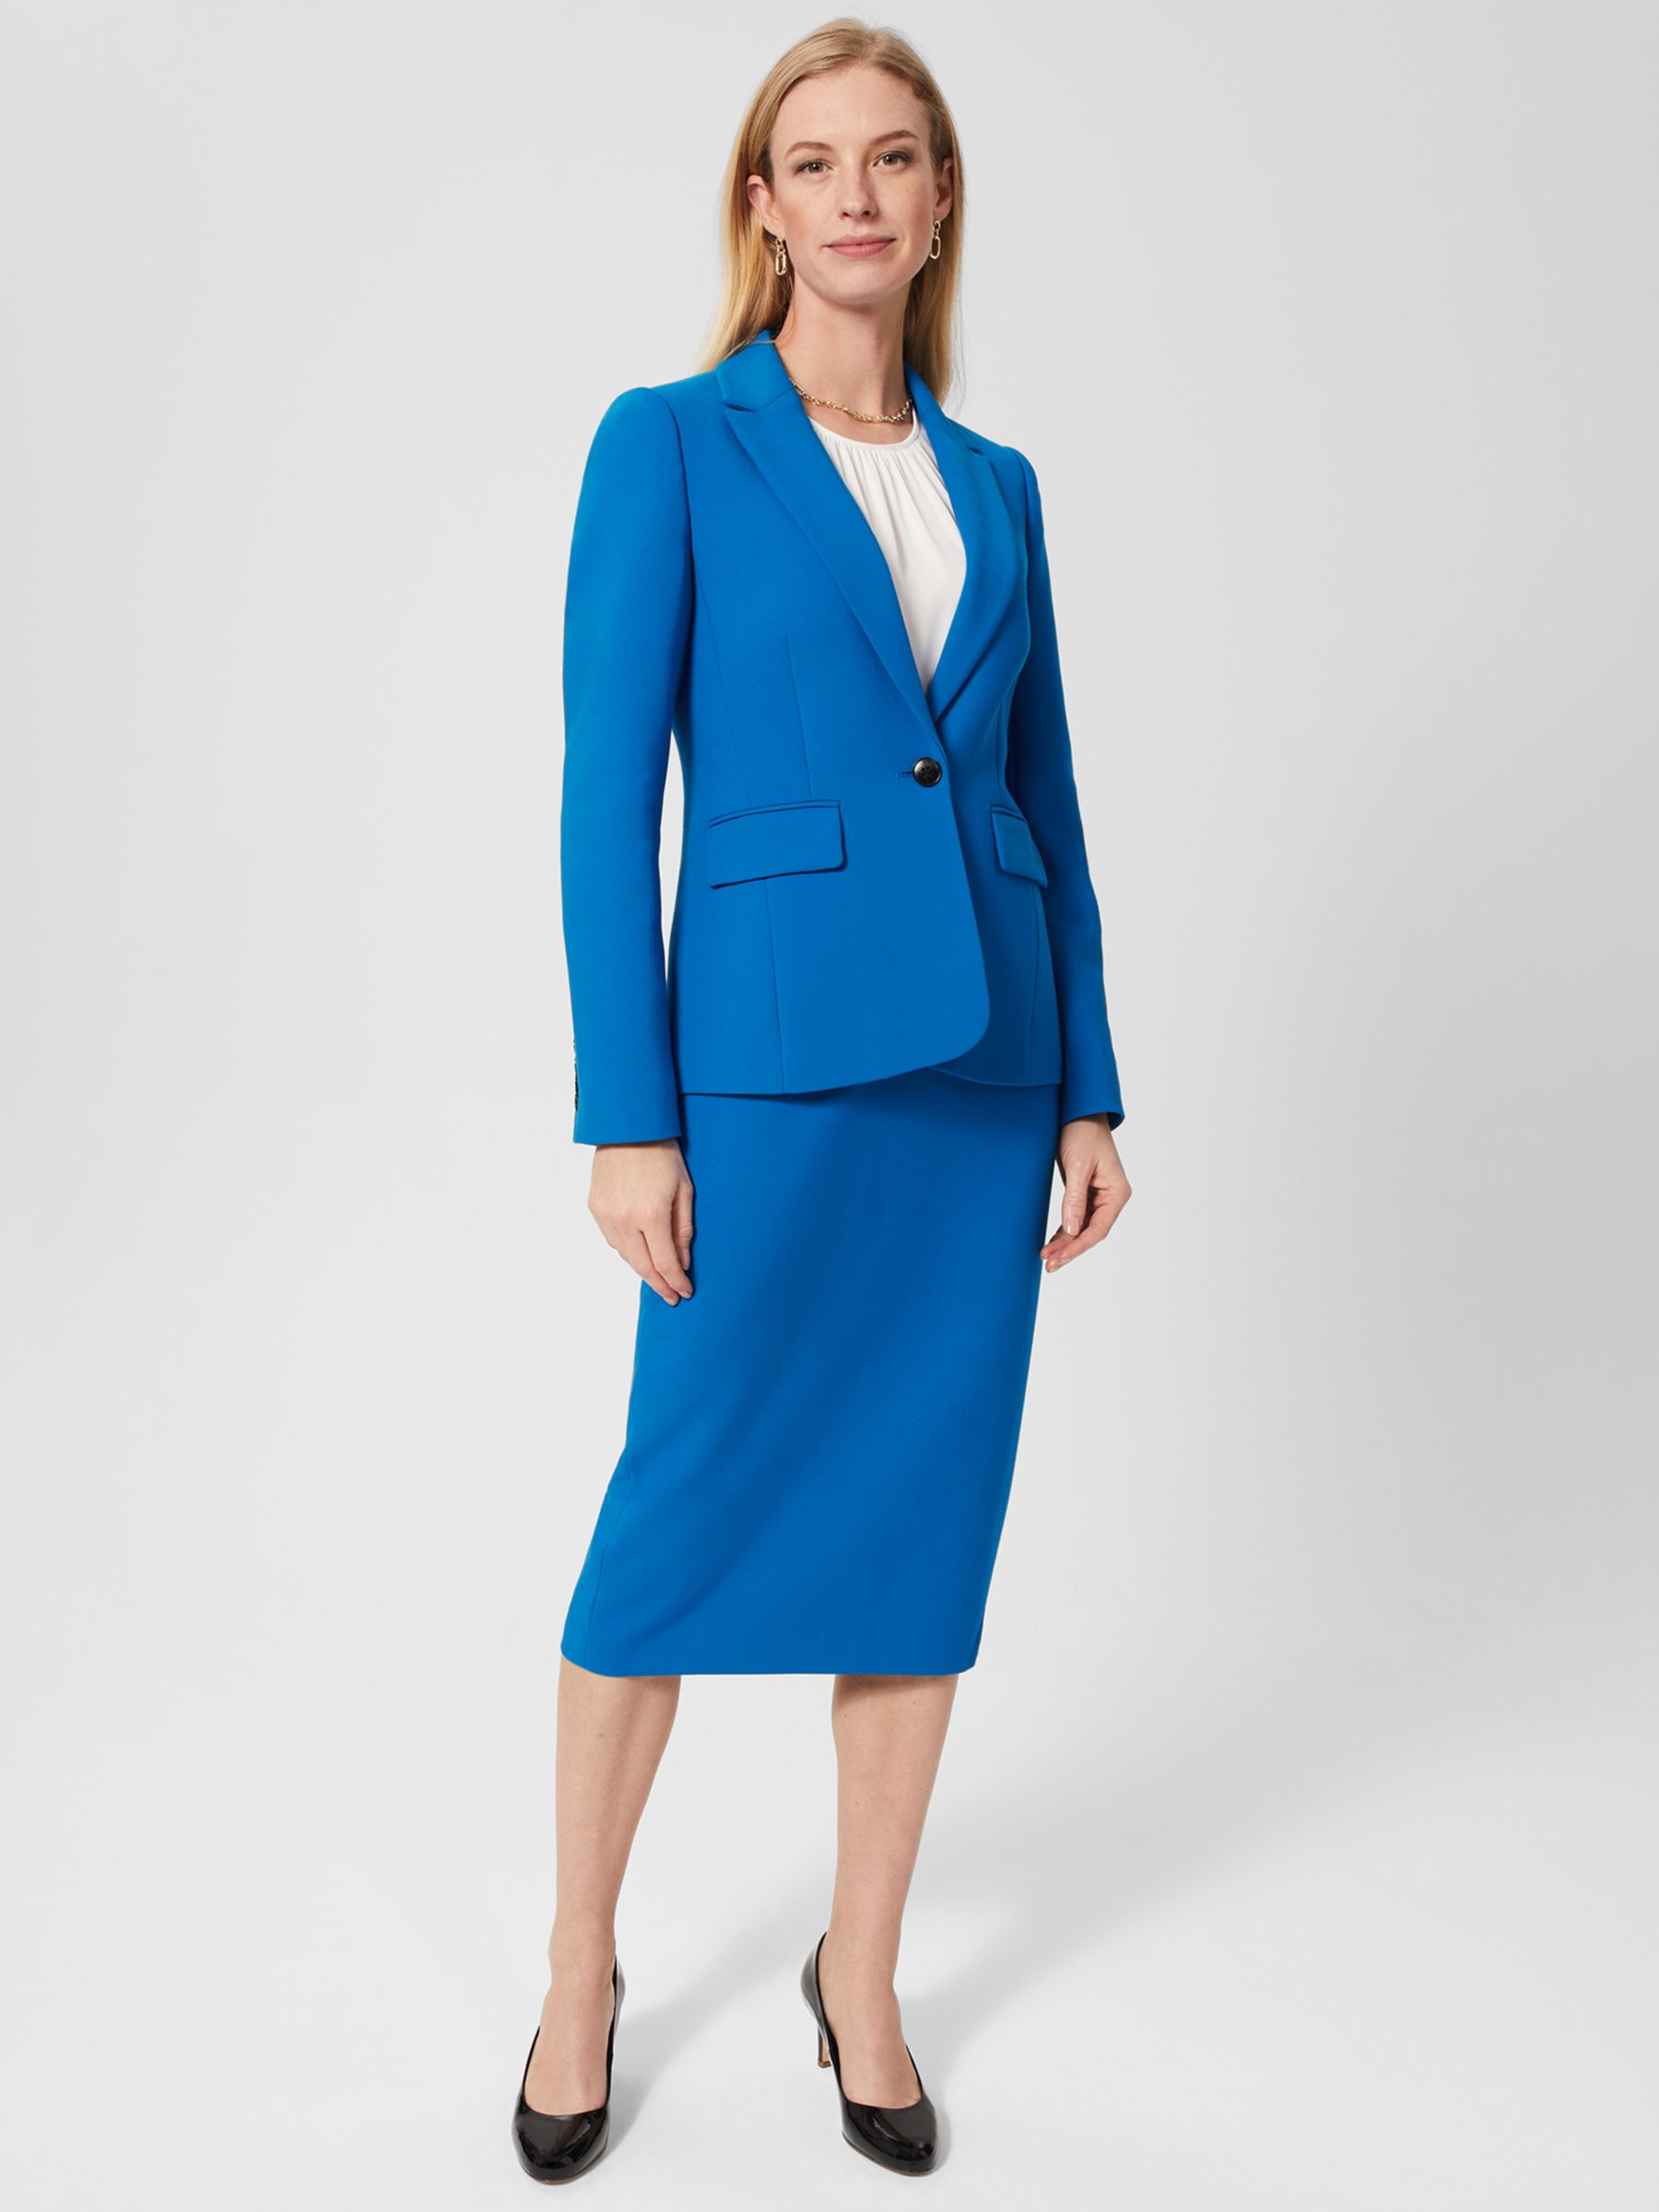 Hobbs Suki Pencil Skirt, Blue at John Lewis & Partners